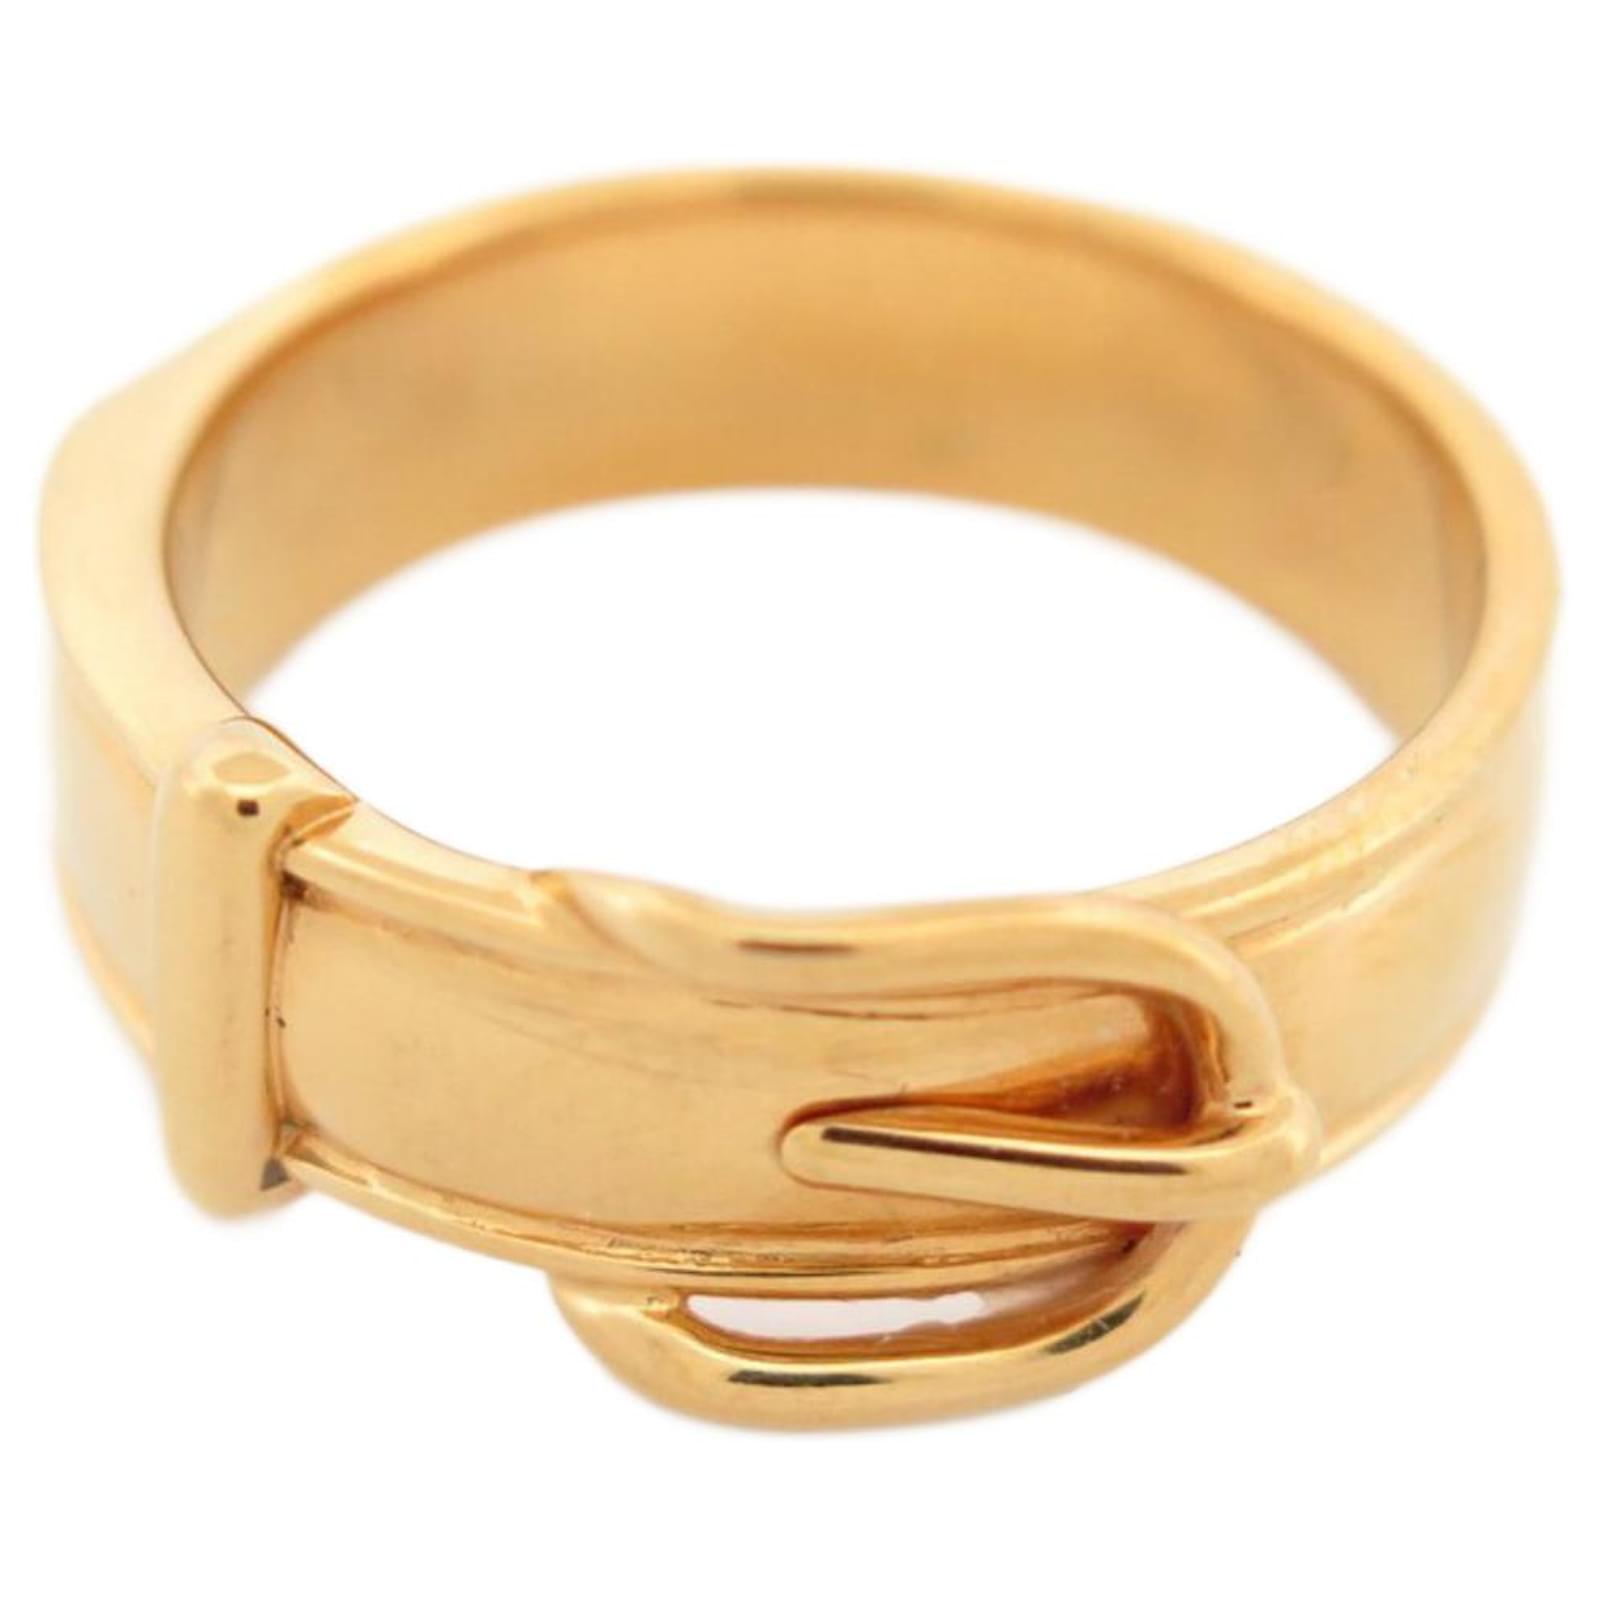 Hermès HERMES SCARF RING BELT BUCKLE IN GOLD METAL GOLDEN SCARF